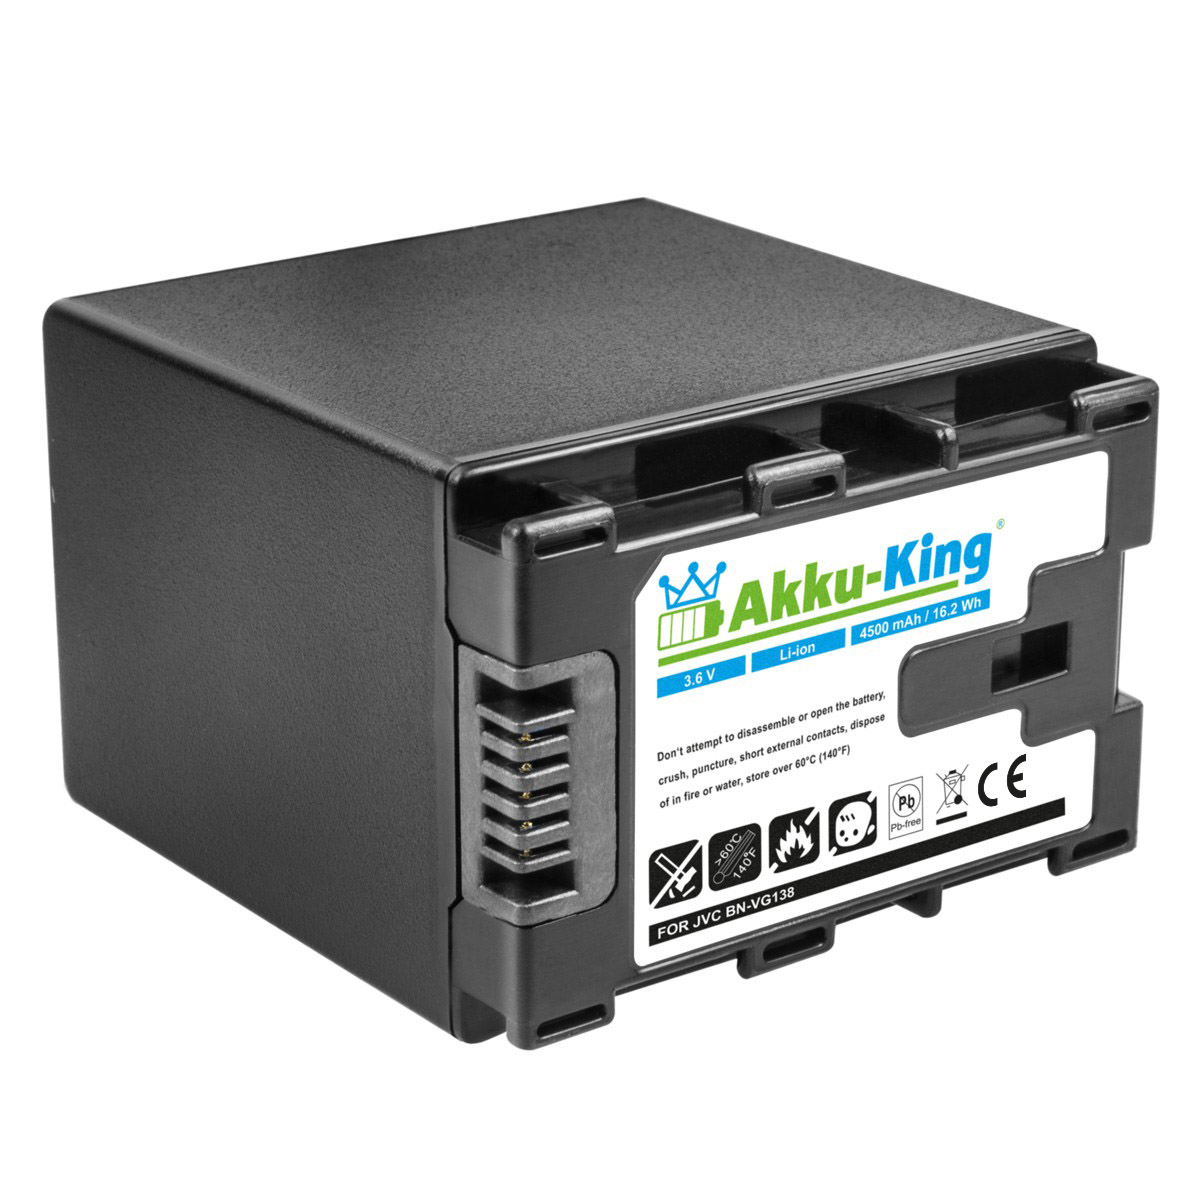 AKKU-KING Akku kompatibel 3.6 mit Li-Ion Volt, BN-VG138 4500mAh Kamera-Akku, JVC